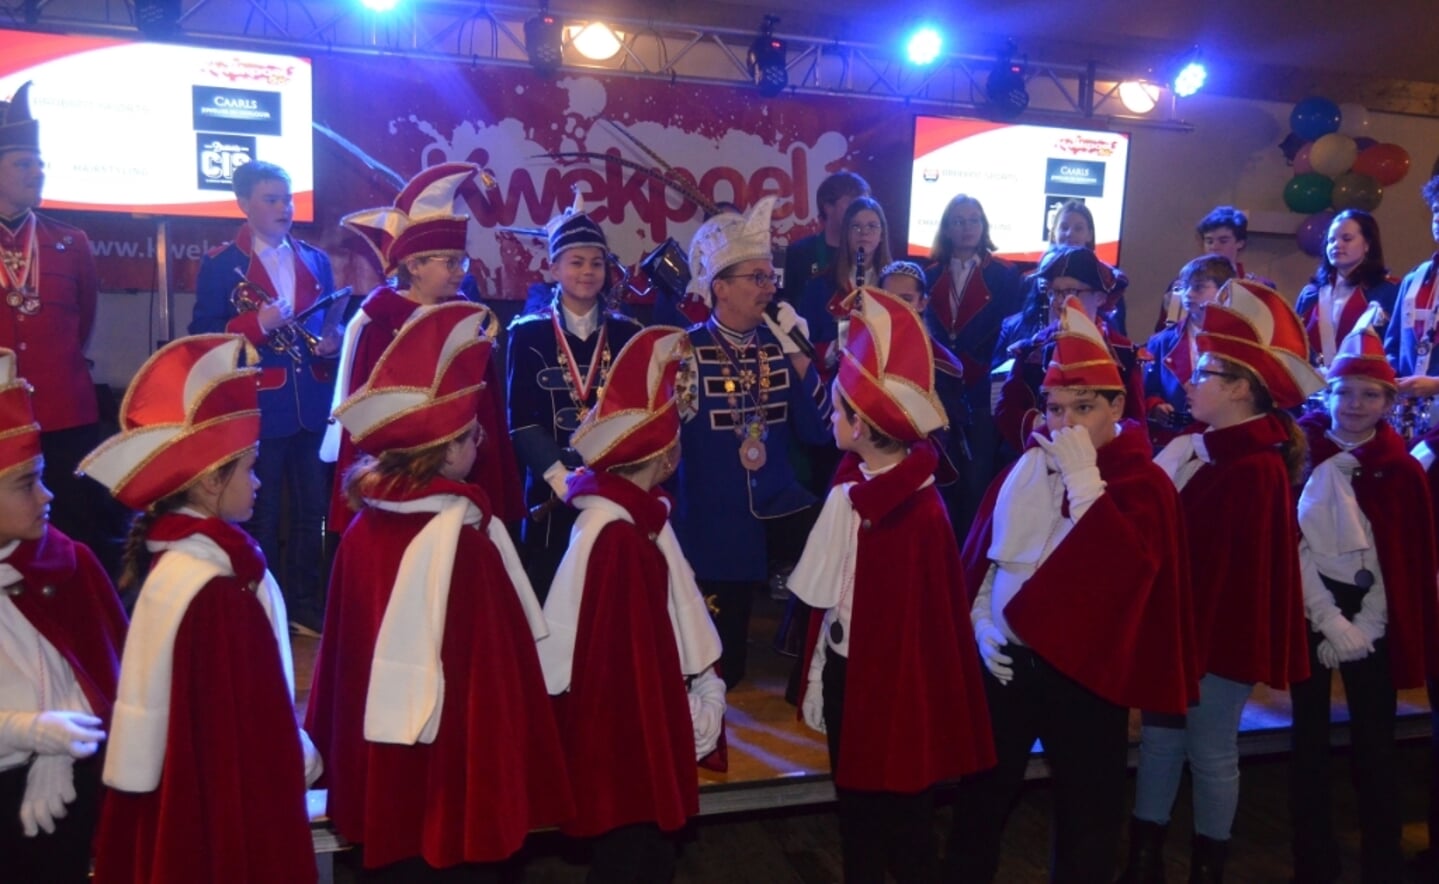 De Knokkers vierde zondag het 55-jarig jubileum in de Comsche Hoeve. Daar kwamen veel Boxtelse kapellen en carnavalsverenigingen/organisaties naar toe om de club te feliciteren.